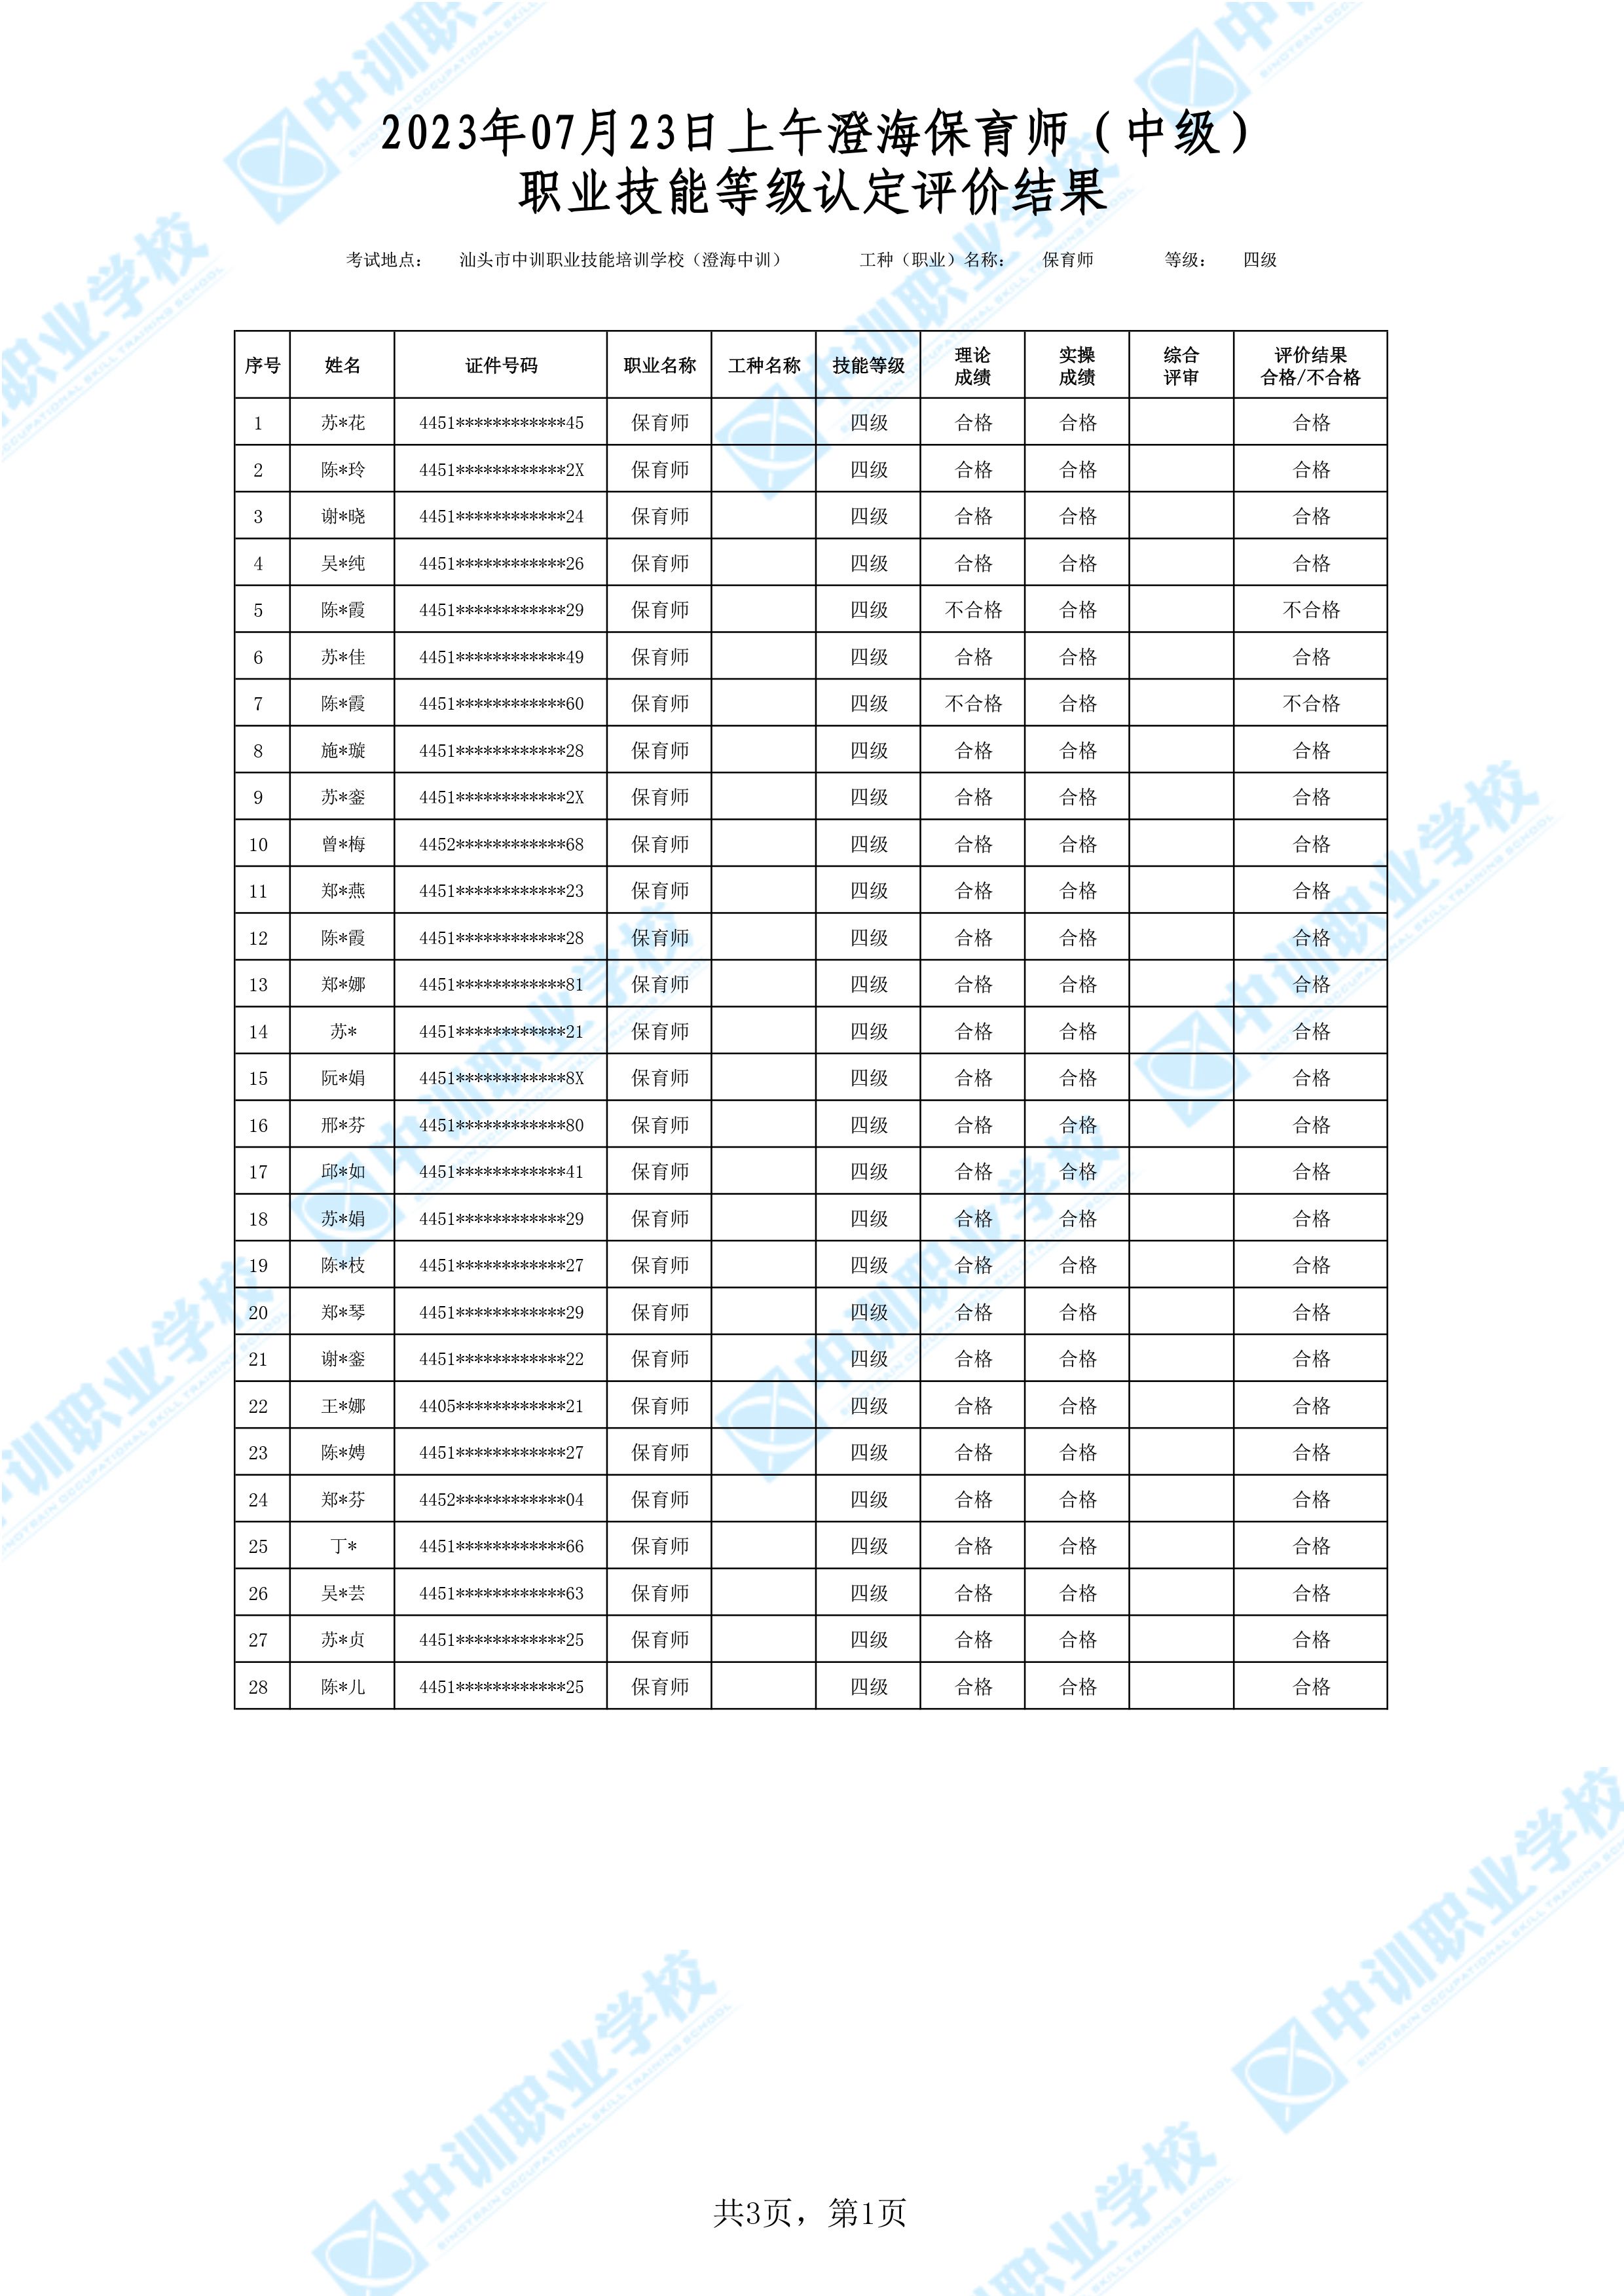 2023-07-23日上午澄海中级保育师考试鉴定名册表-1 副本.jpg